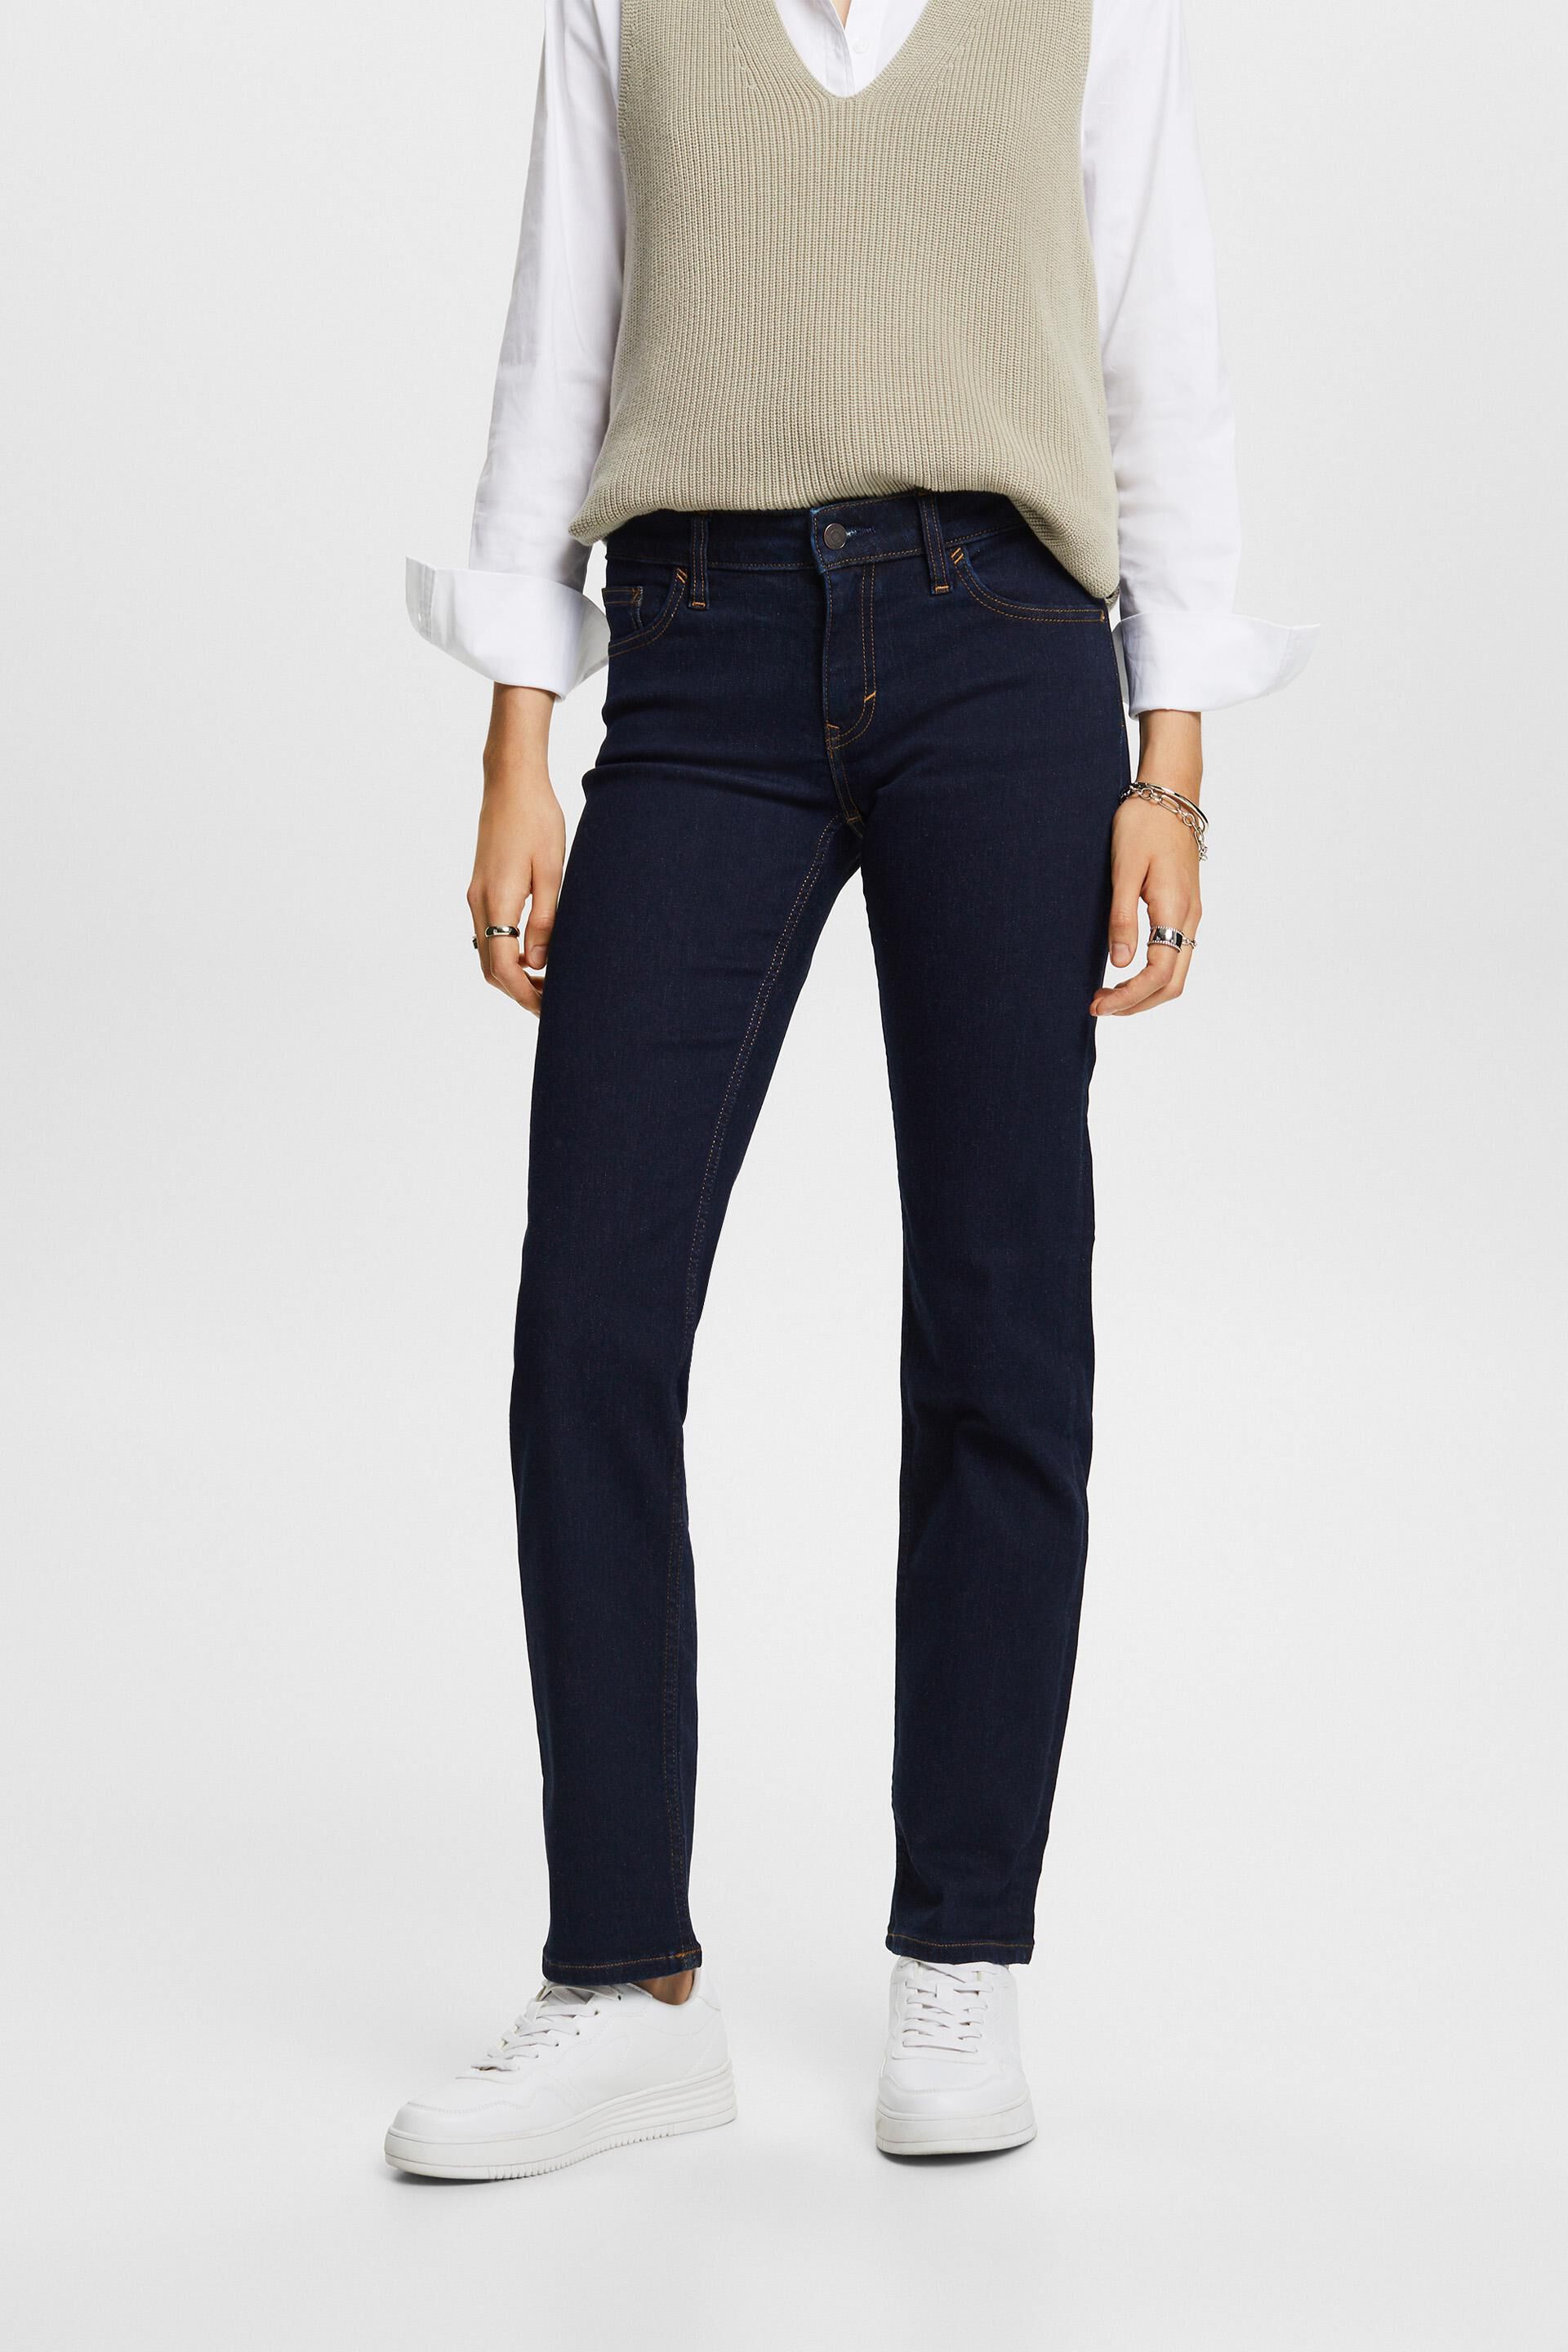 Esprit stretch cotton leg jeans, blend Straight